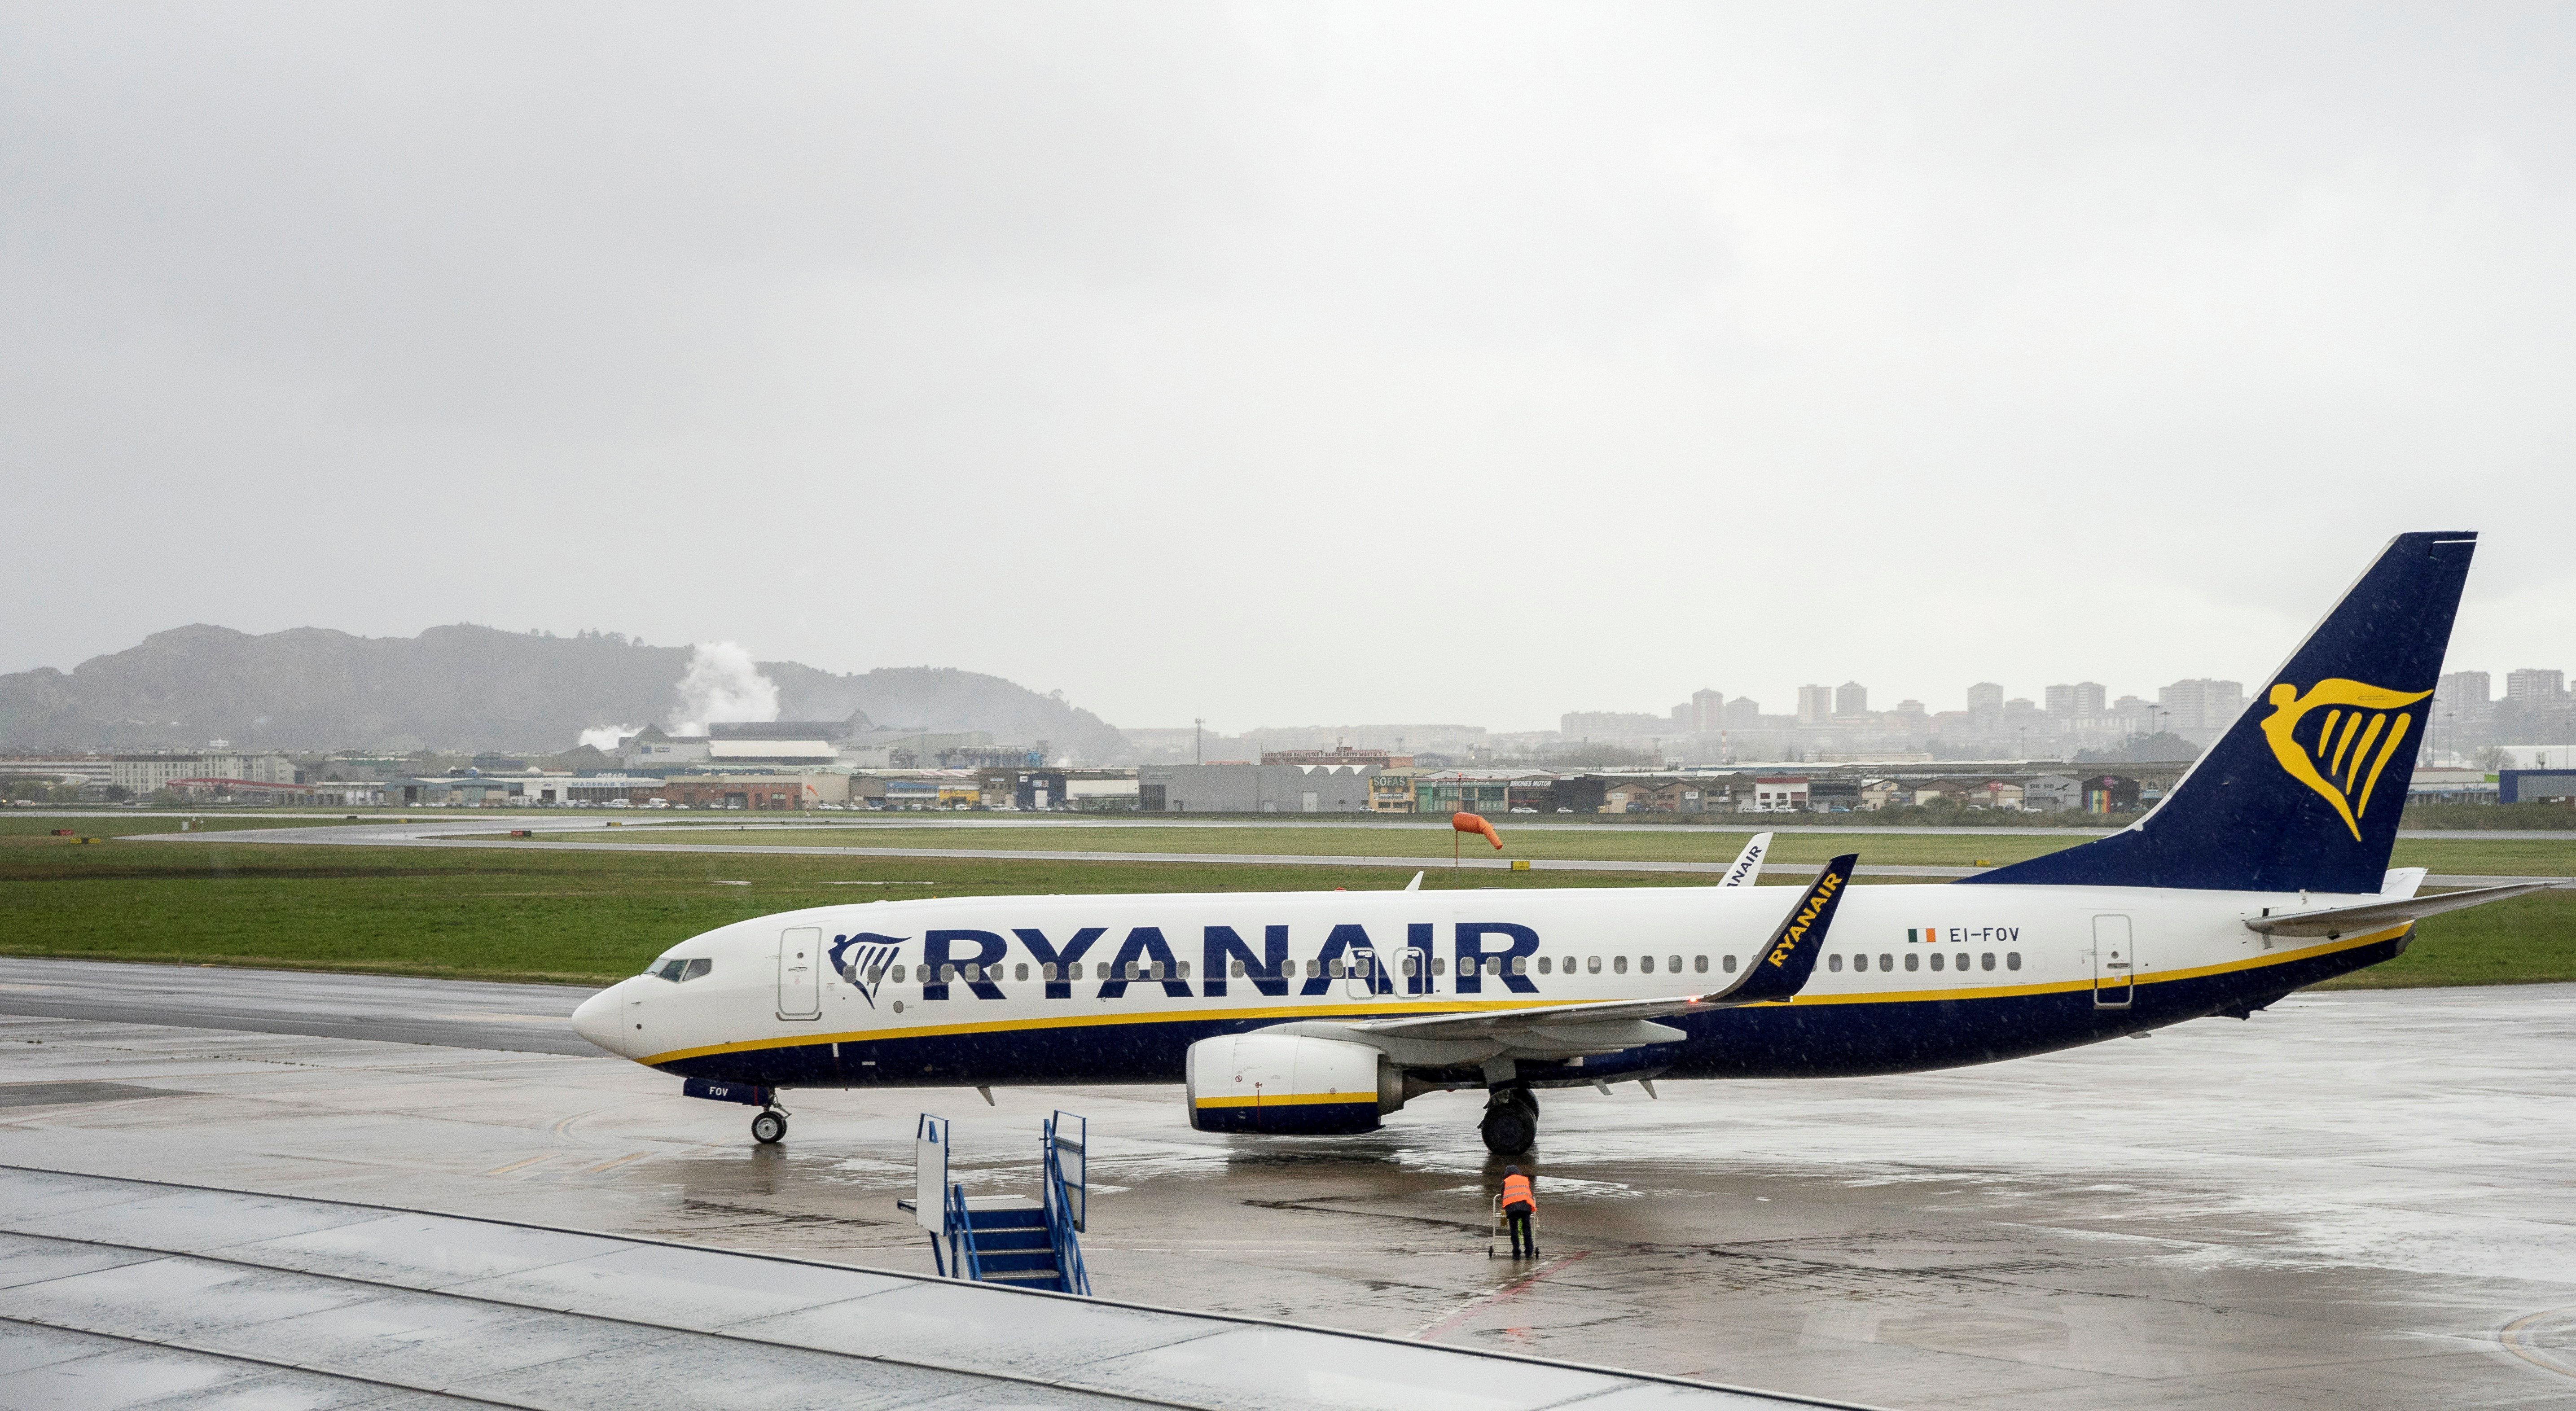 Ryanair admite usar &#8220;se necessário&#8221; tripulantes estrangeiros devido à greve em Portugal